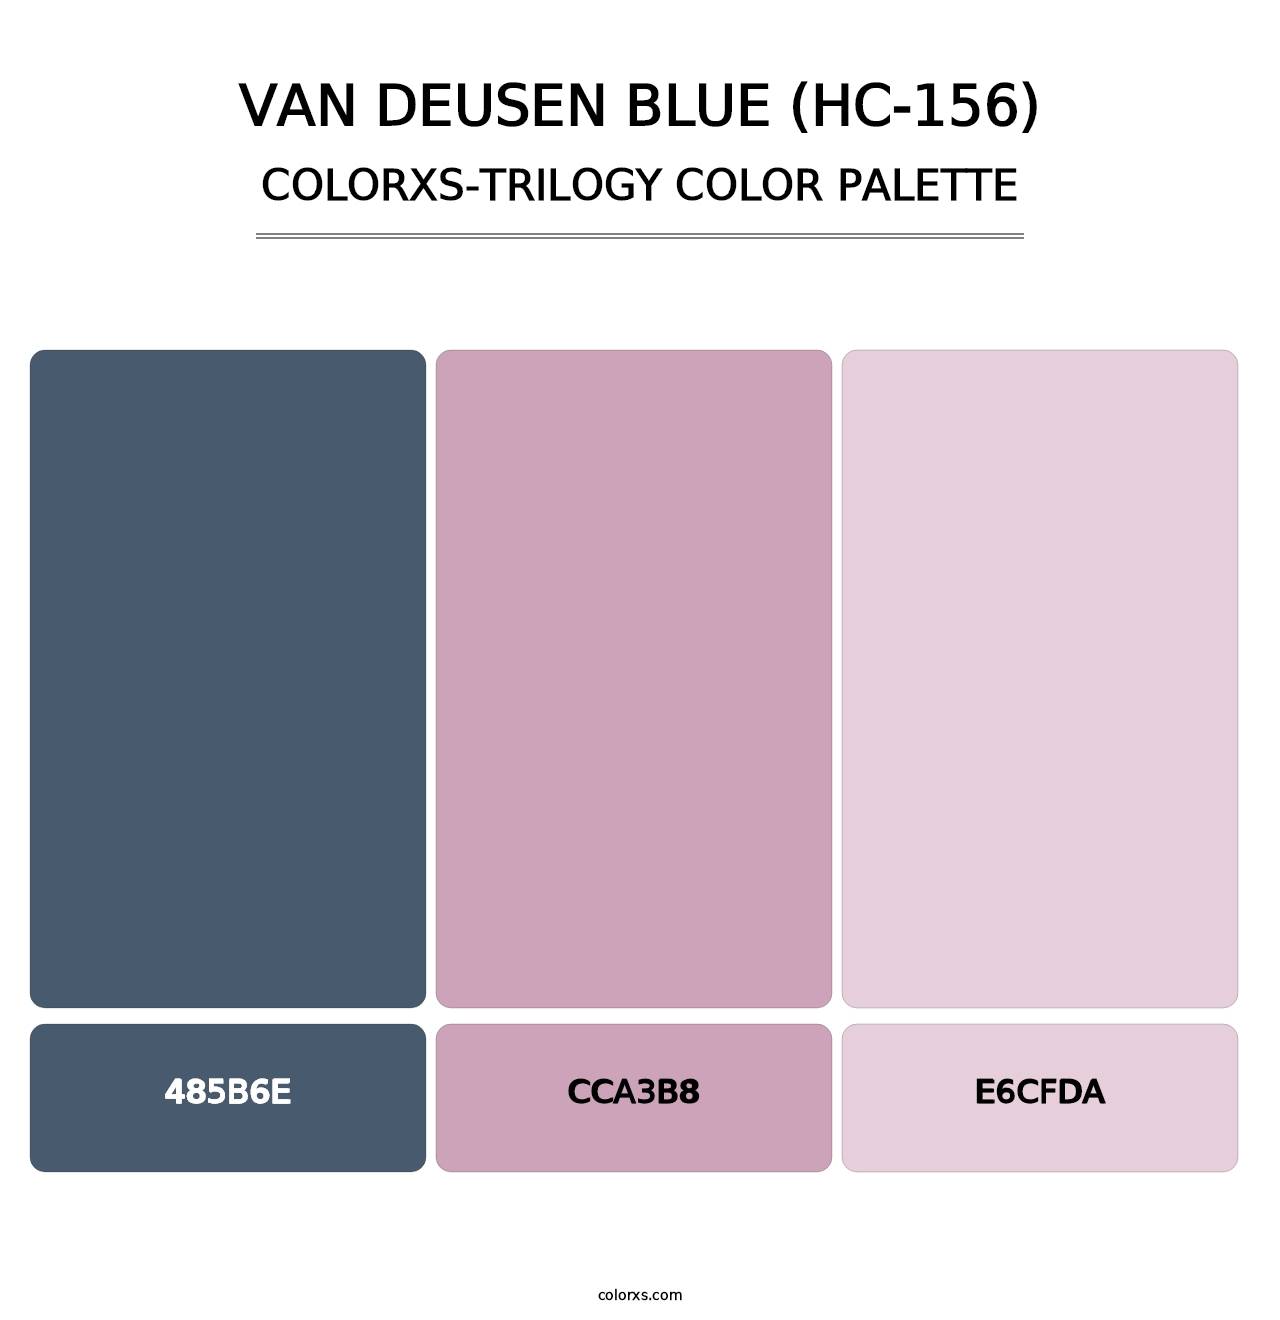 Van Deusen Blue (HC-156) - Colorxs Trilogy Palette